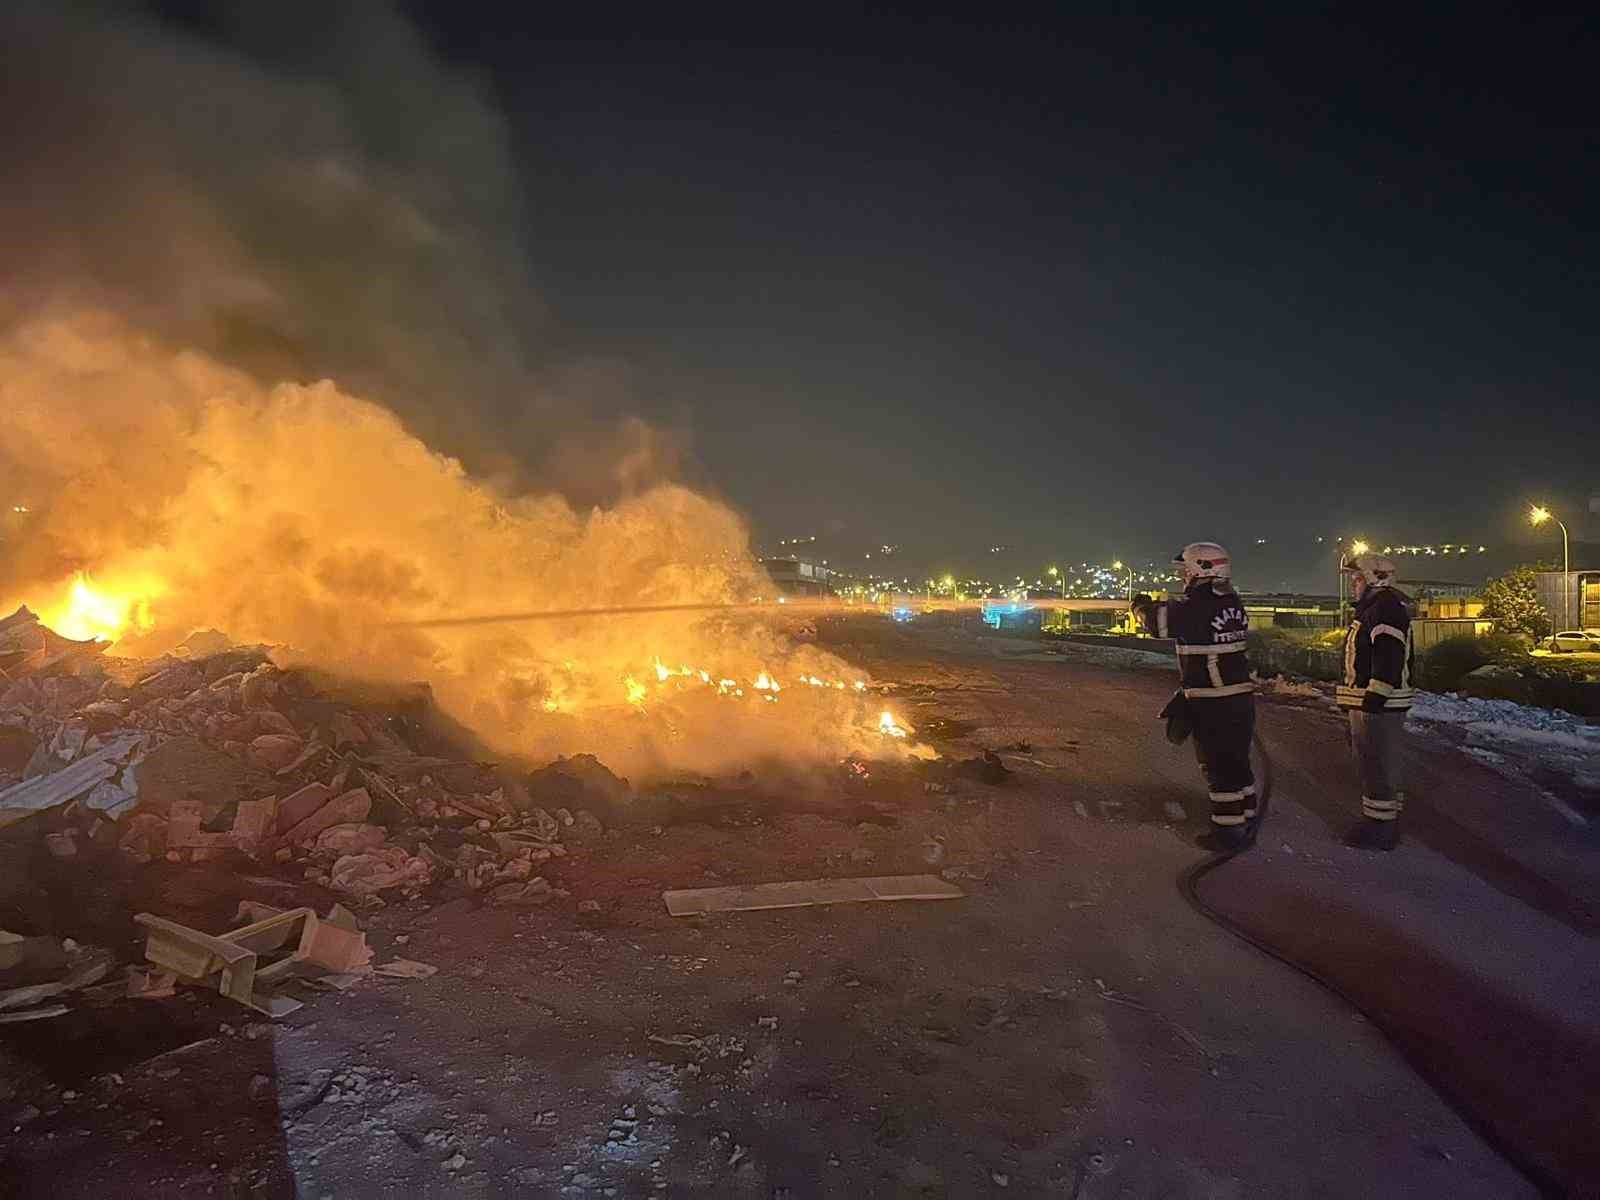 Antakya’da sanayi sitesinde çöplük alanda çıkan yangın söndürüldü